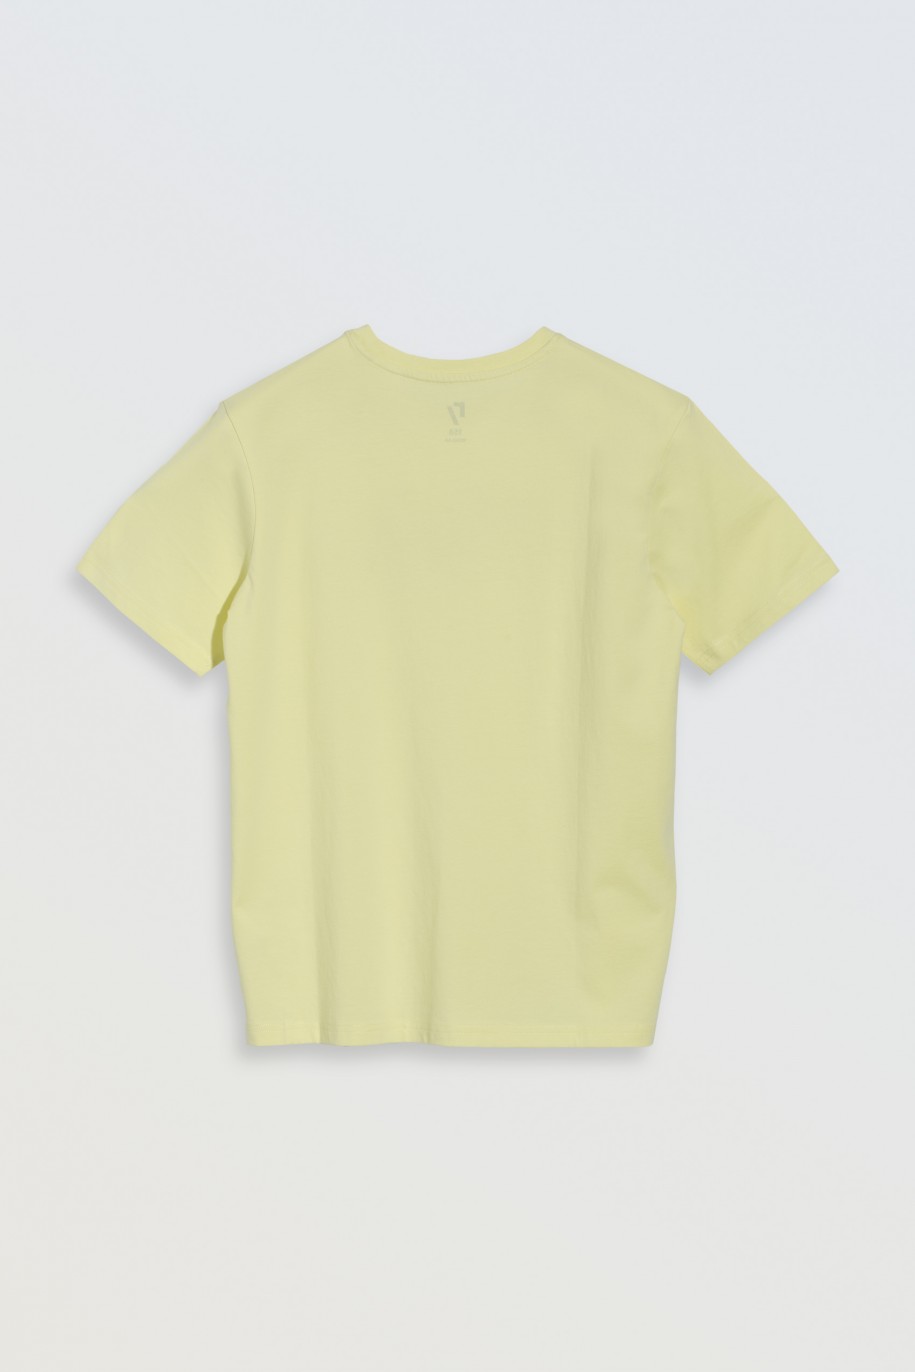 Żółty t-shirt z czarnym nadrukiem na wysokości piersi - 46856